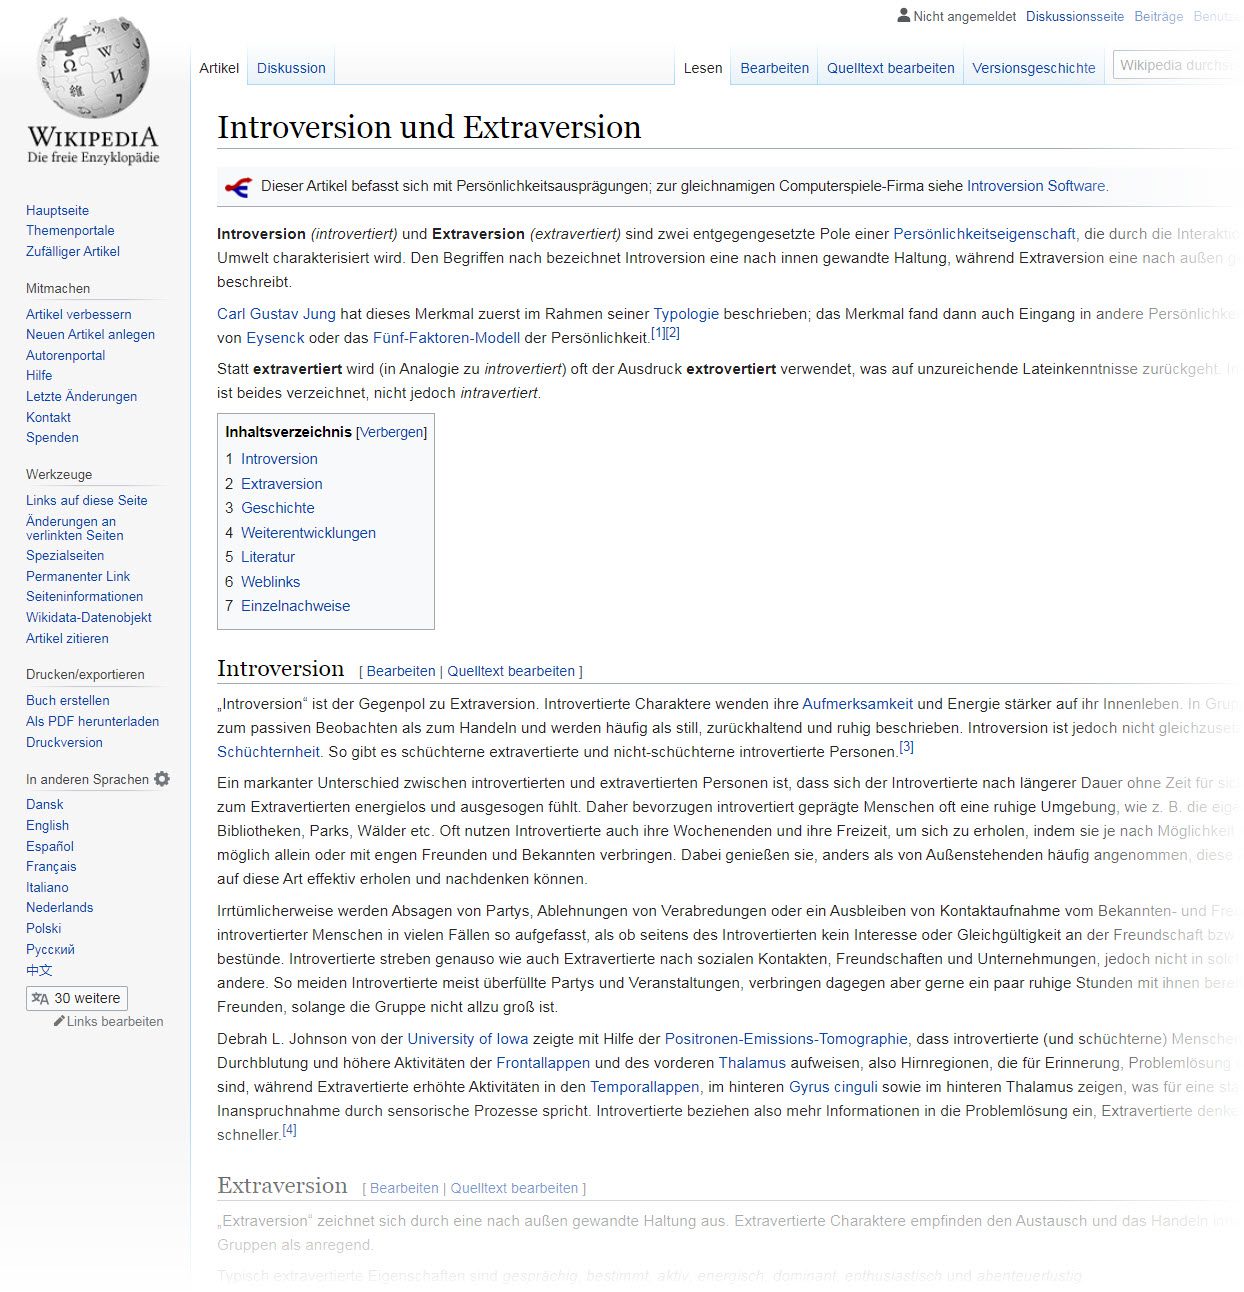 Introversion vs. Extraversion | Introvertiert Definition und Bedeutung laut Wikipedia